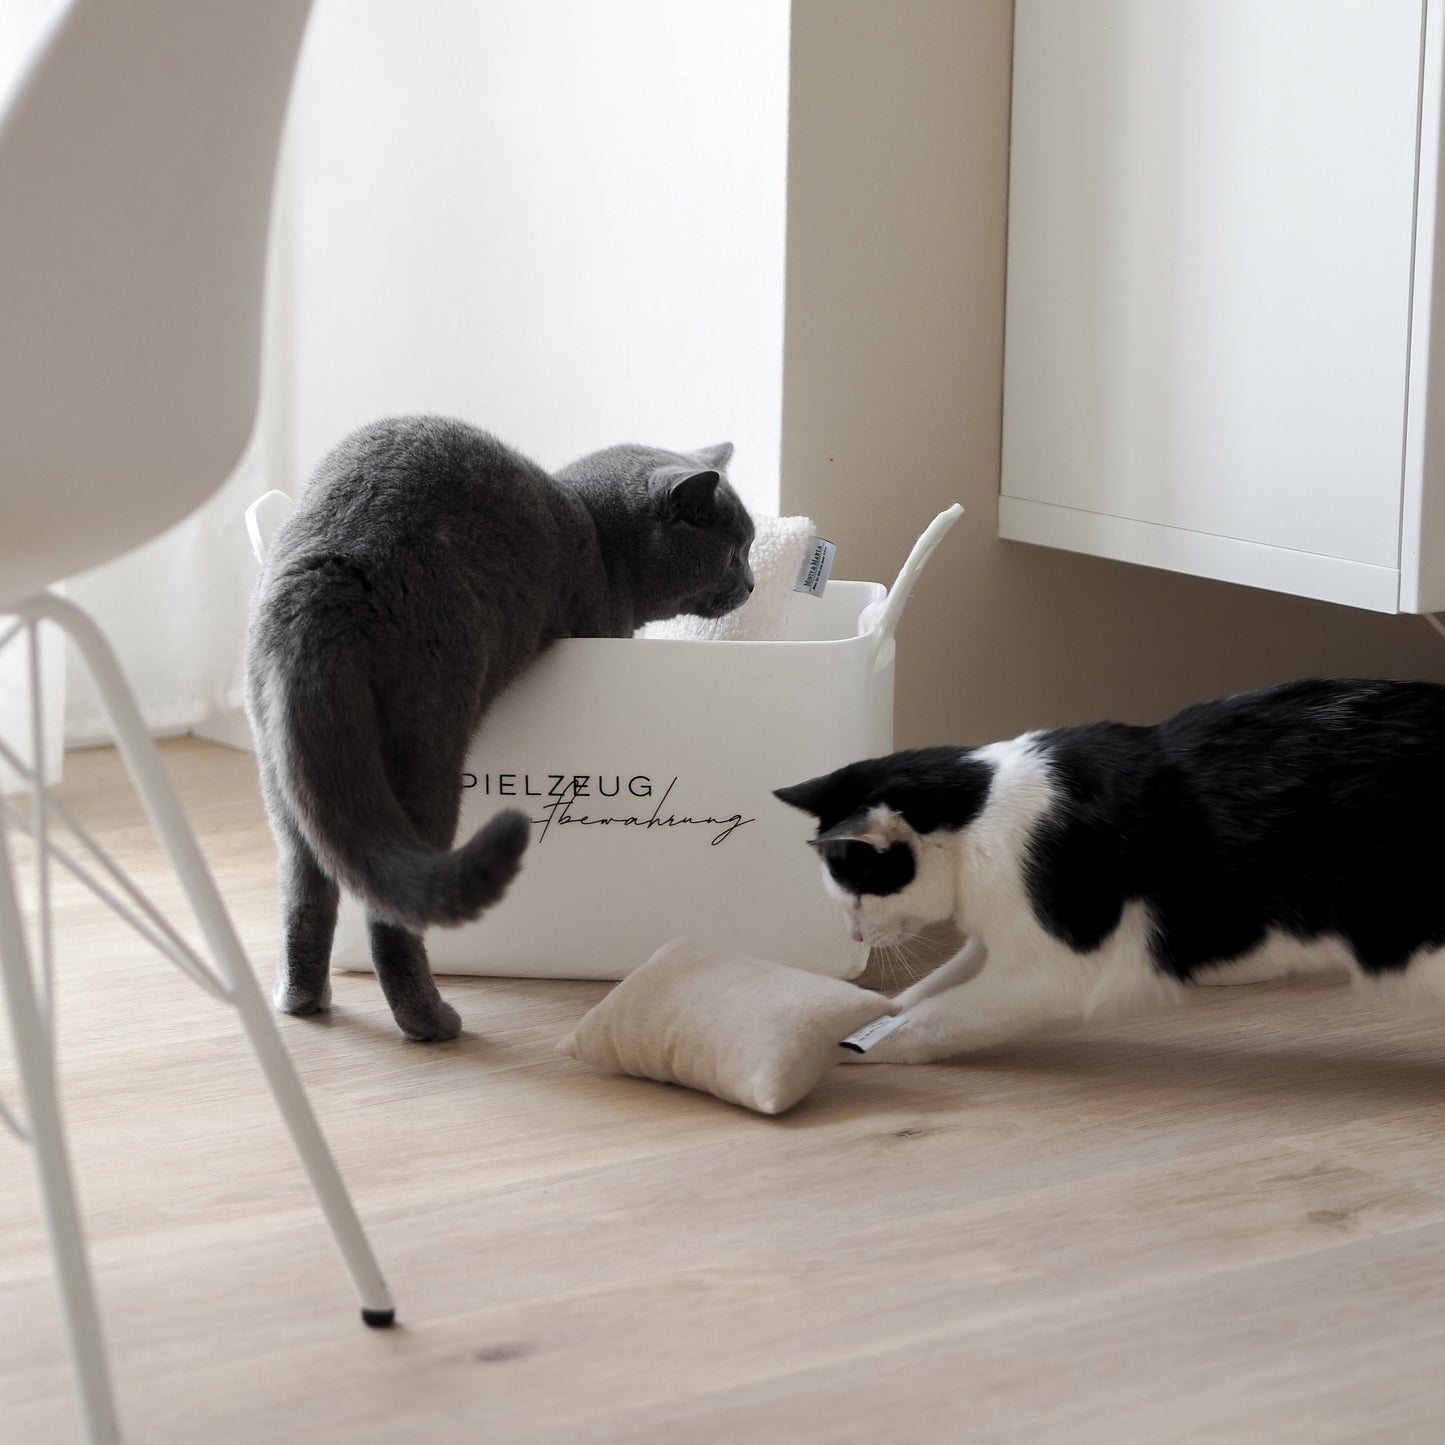 Katzen spielen mit schönem Katzenspielzeug und einem Korb für das Spielzeug von Katzen.